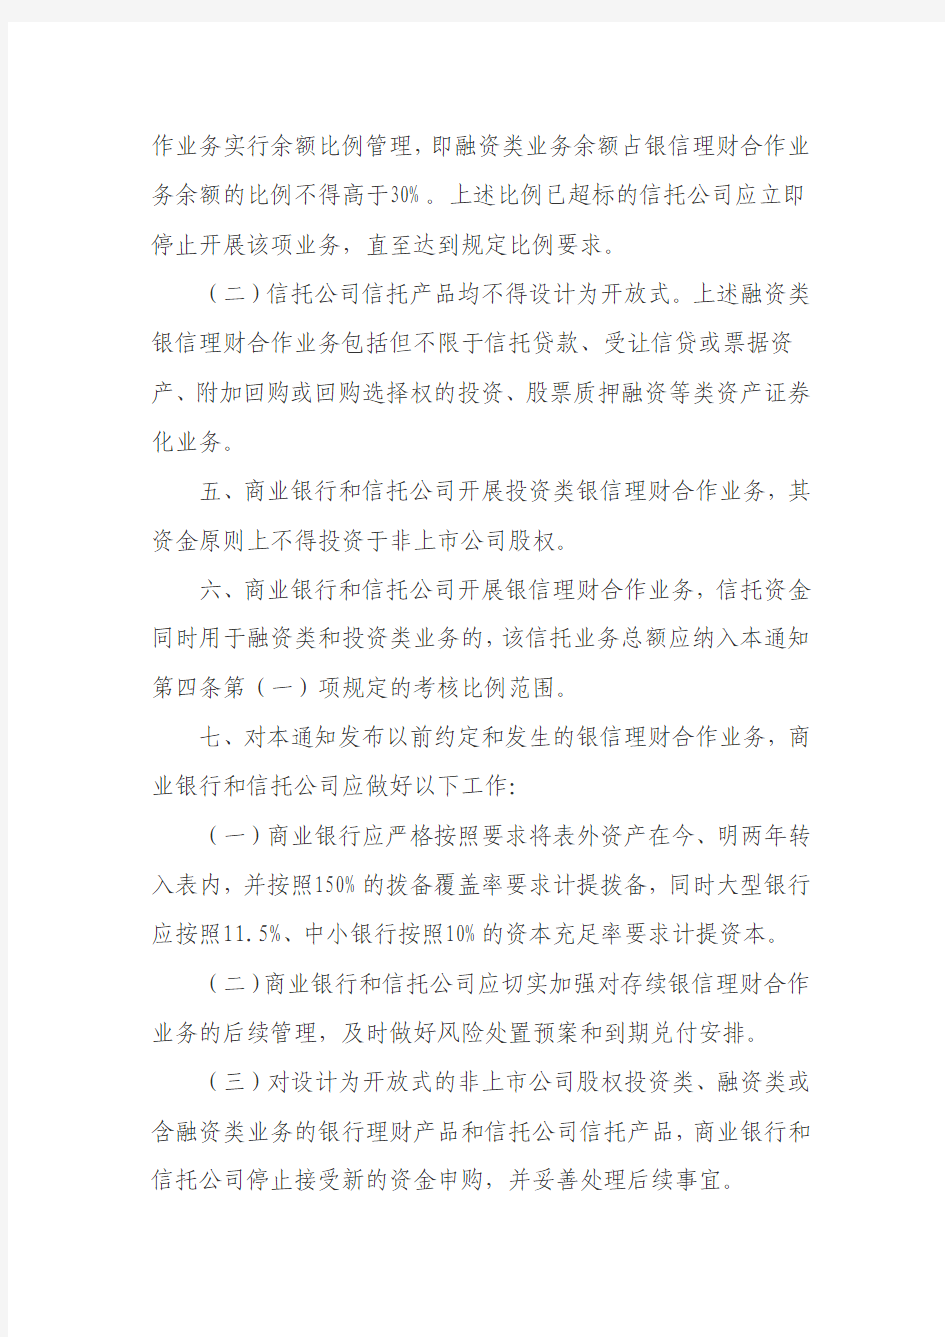 中国银监会关于规范银信理财合作业务有关事项的通知